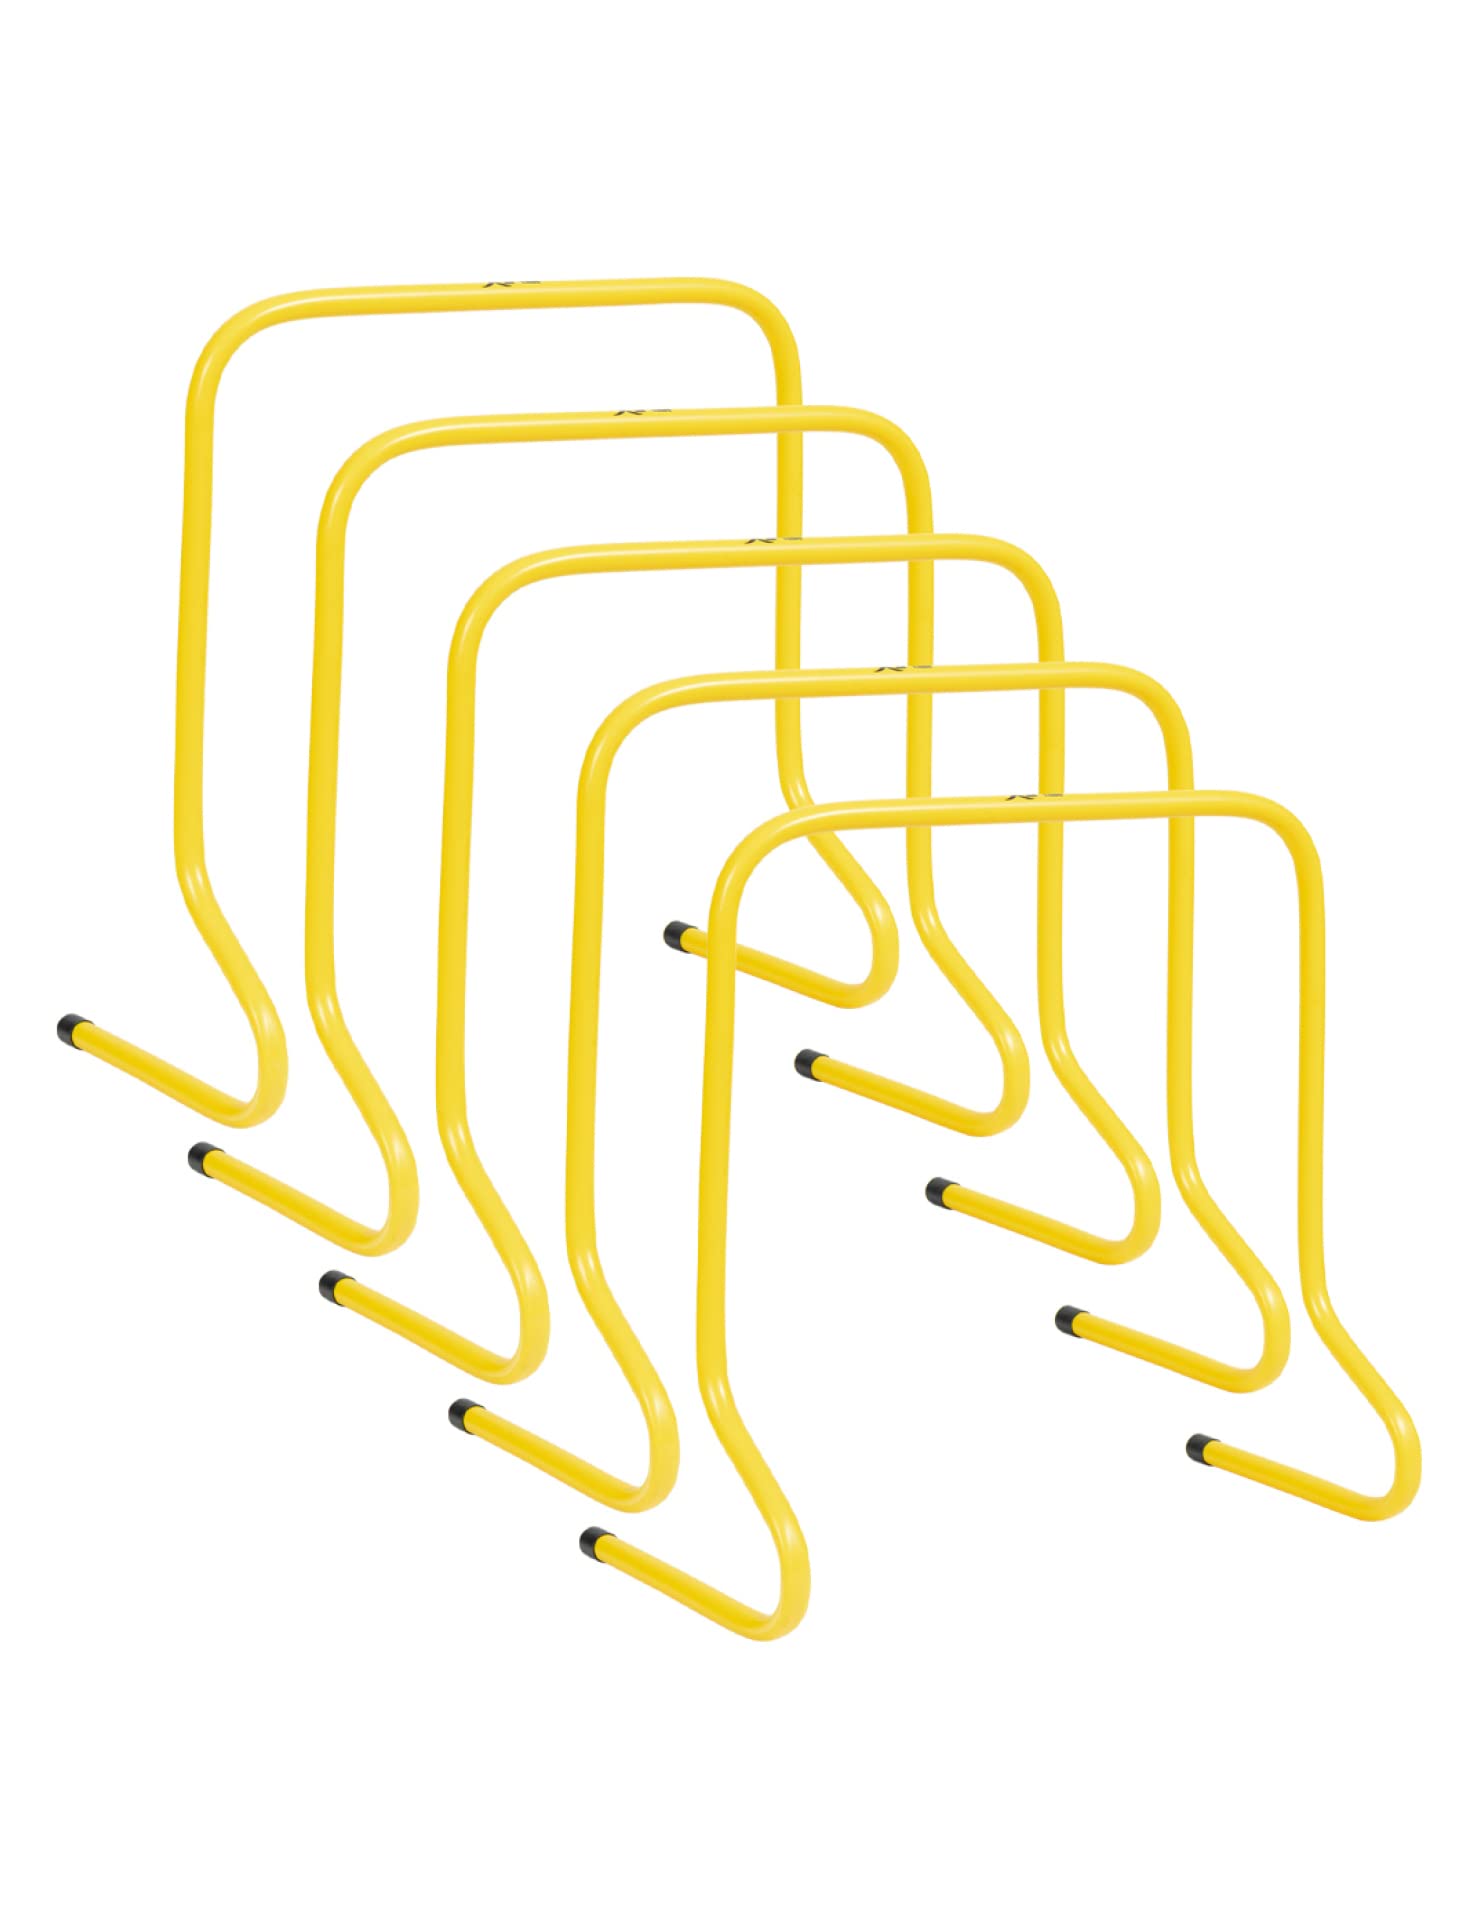 JELEX Agility Trainingshürden 5er-Set Verschiedene Größen, Koordinationshürden Trainingsequipment gelb, geeignet für Indoor und Outdoor Übungen aus robustem Kunststoffmaterial (50 cm)